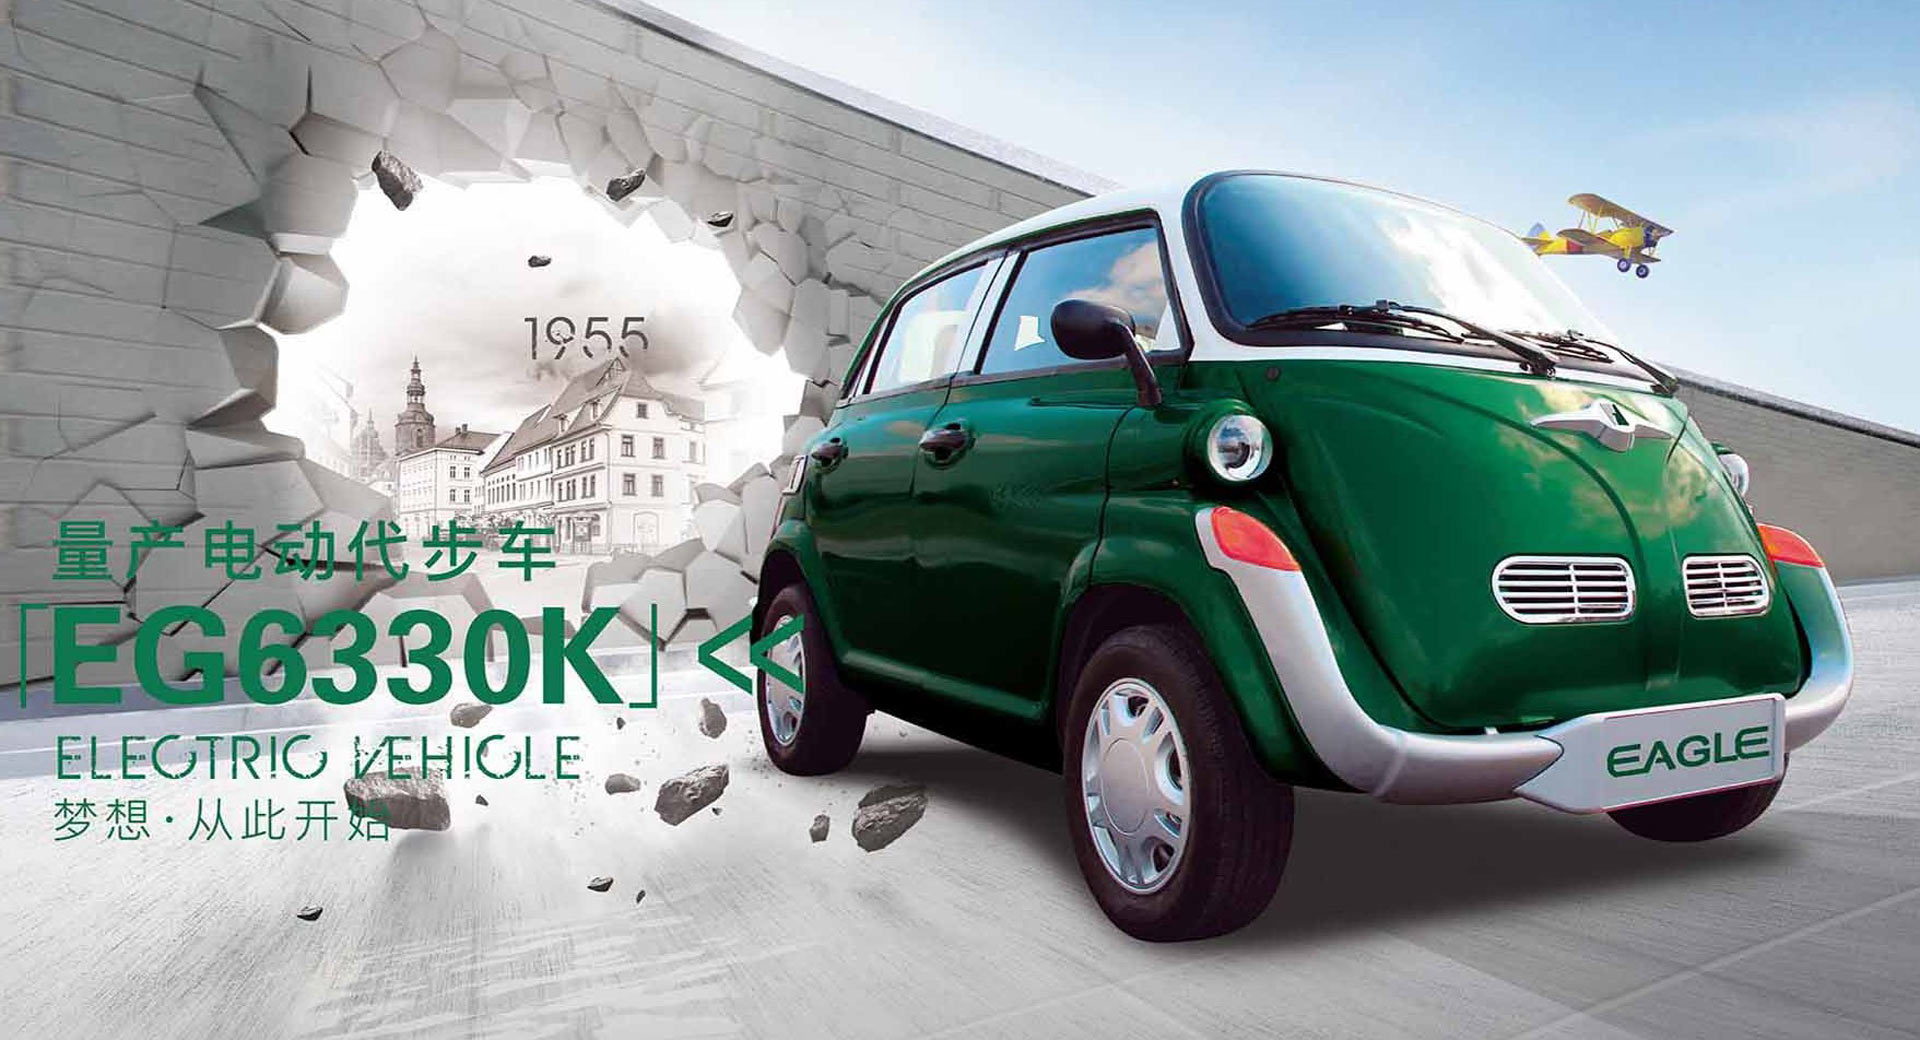 "بالصور" شركة سيارات صينية صنعت بي إم دبليو إيسيتا مقلّدة 2